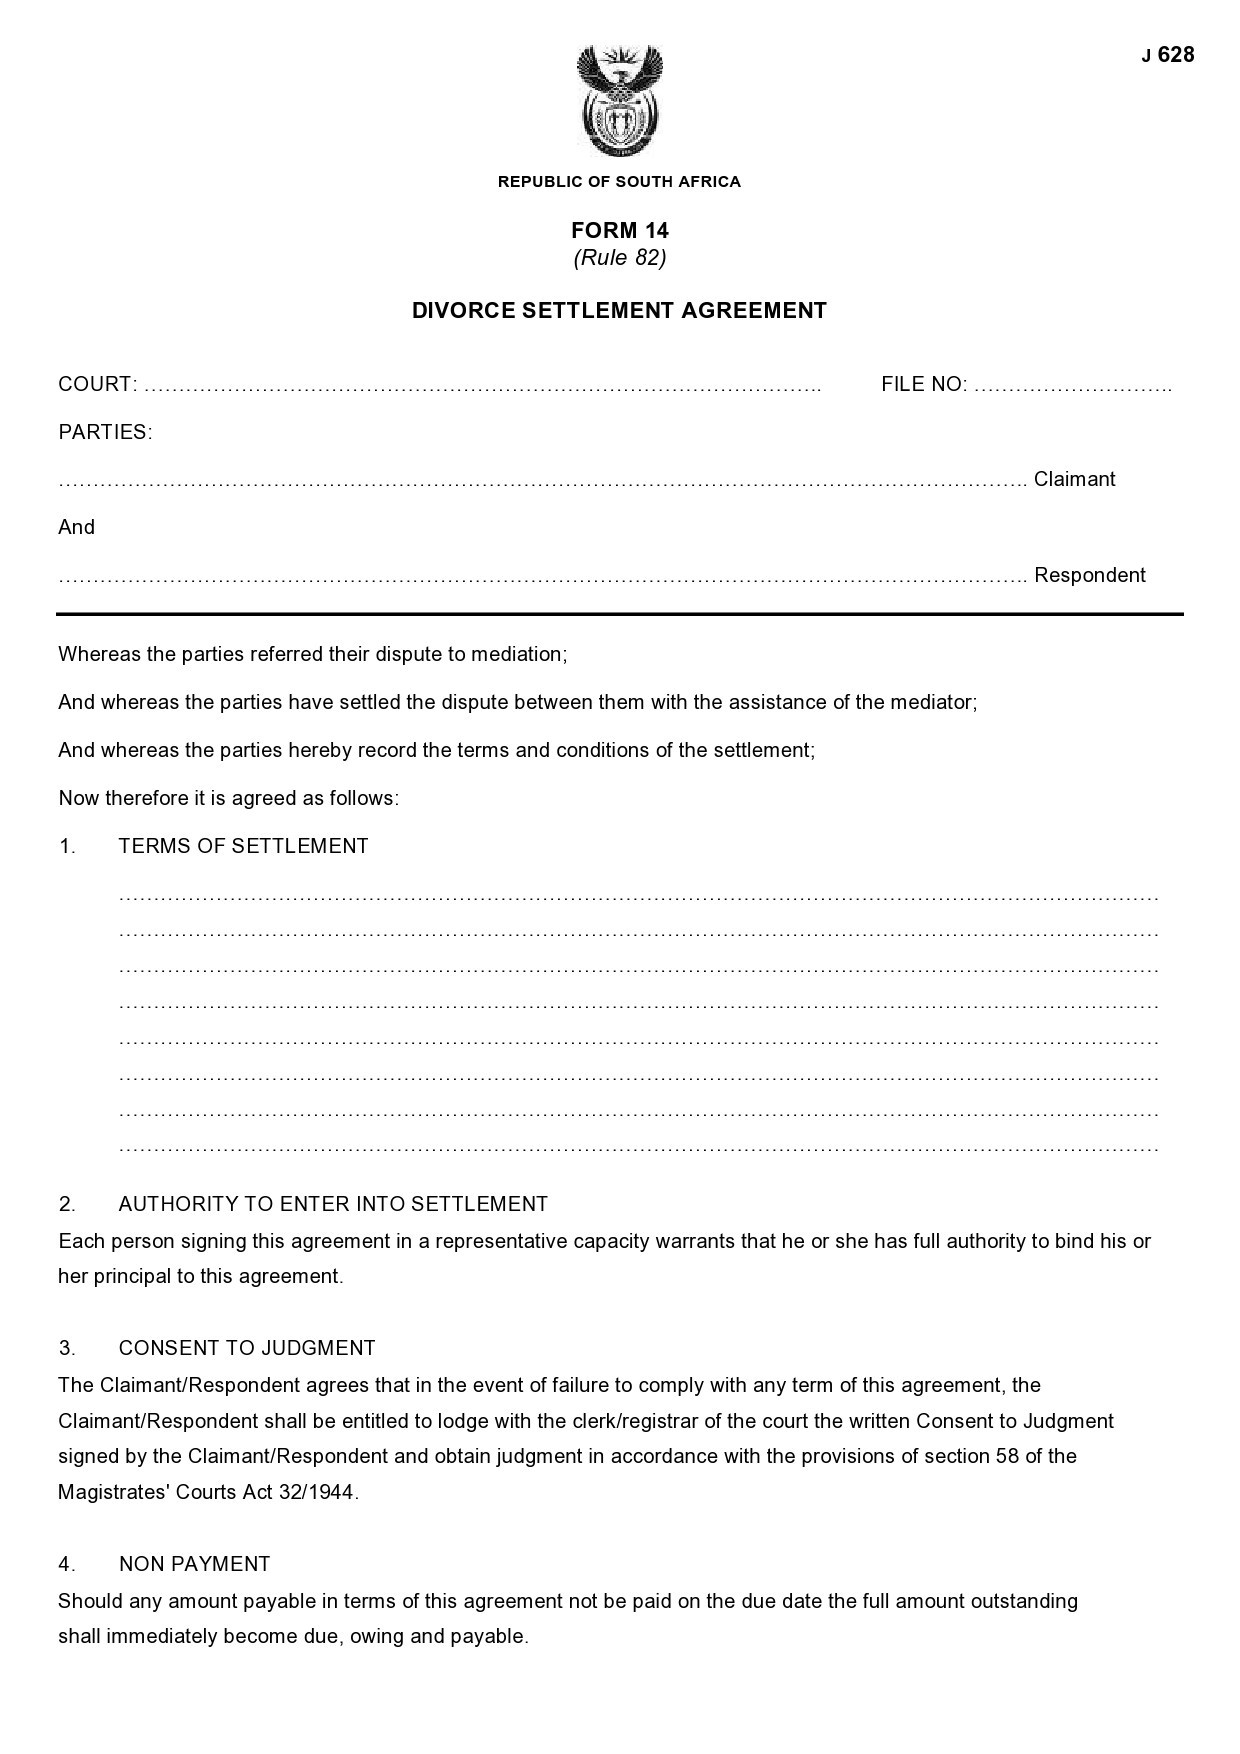 Free marital settlement agreement 44